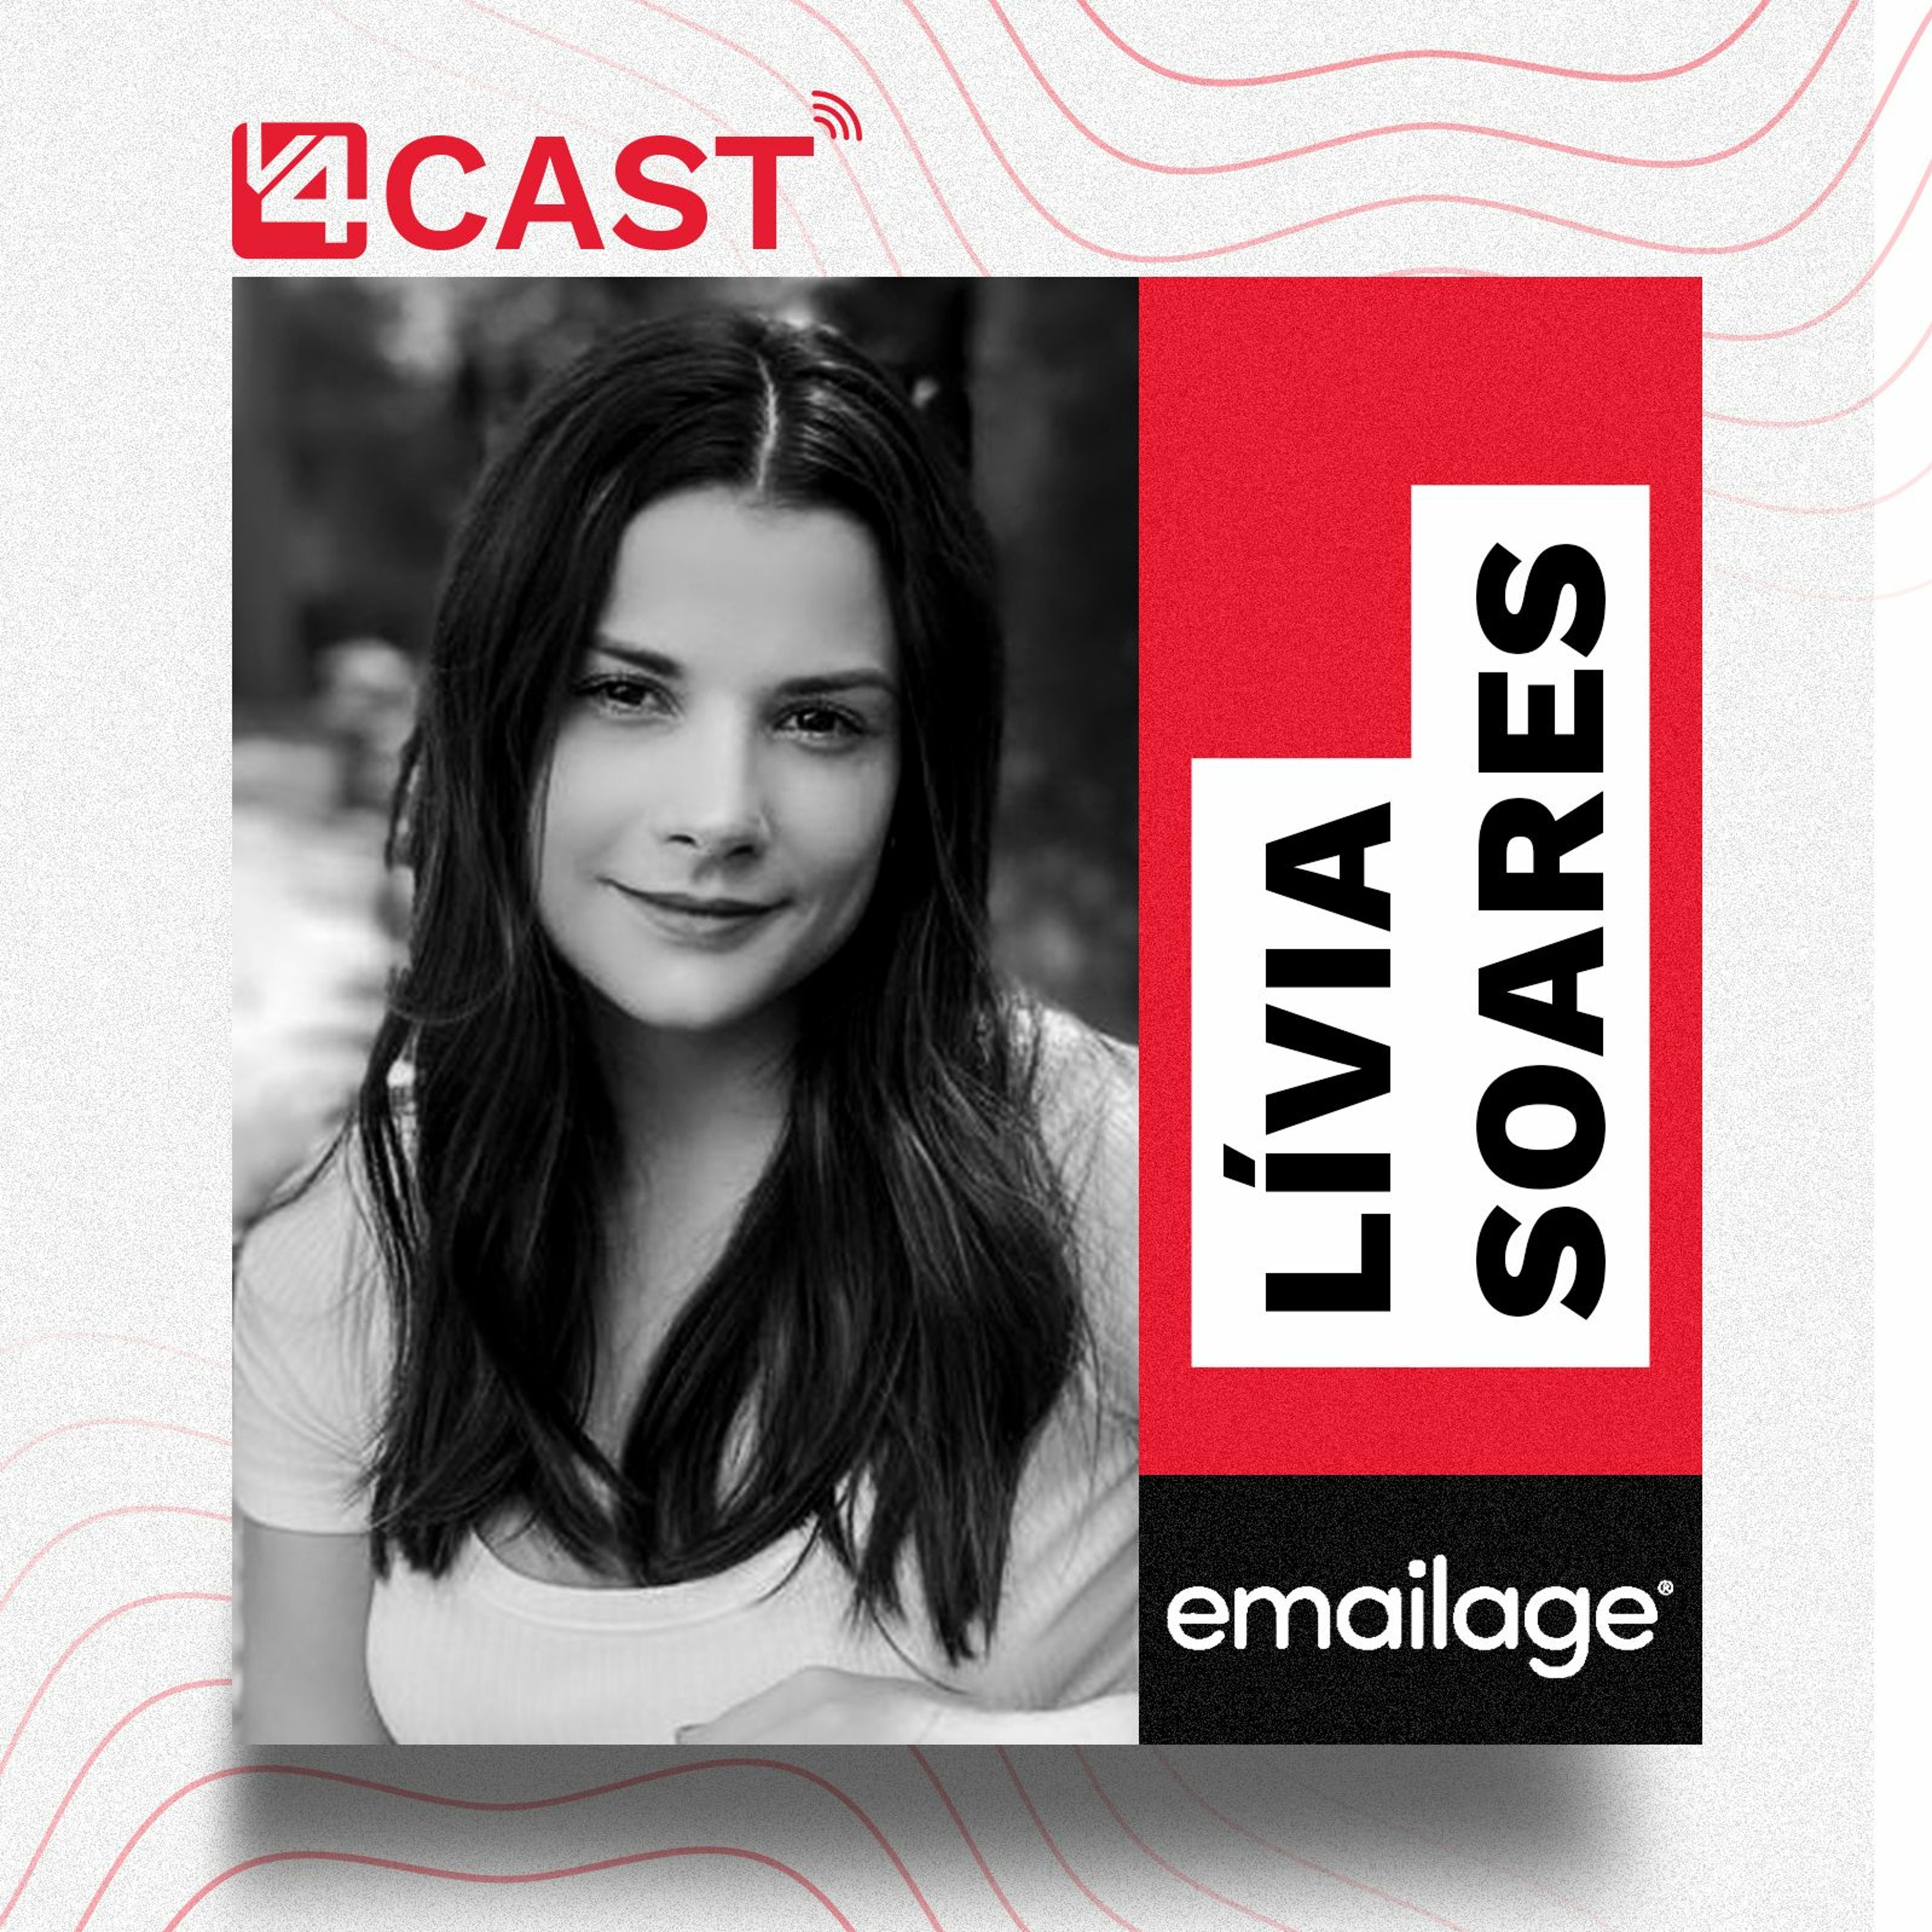 Lívia Soares - Director of Sales da Emailage | V4Cast